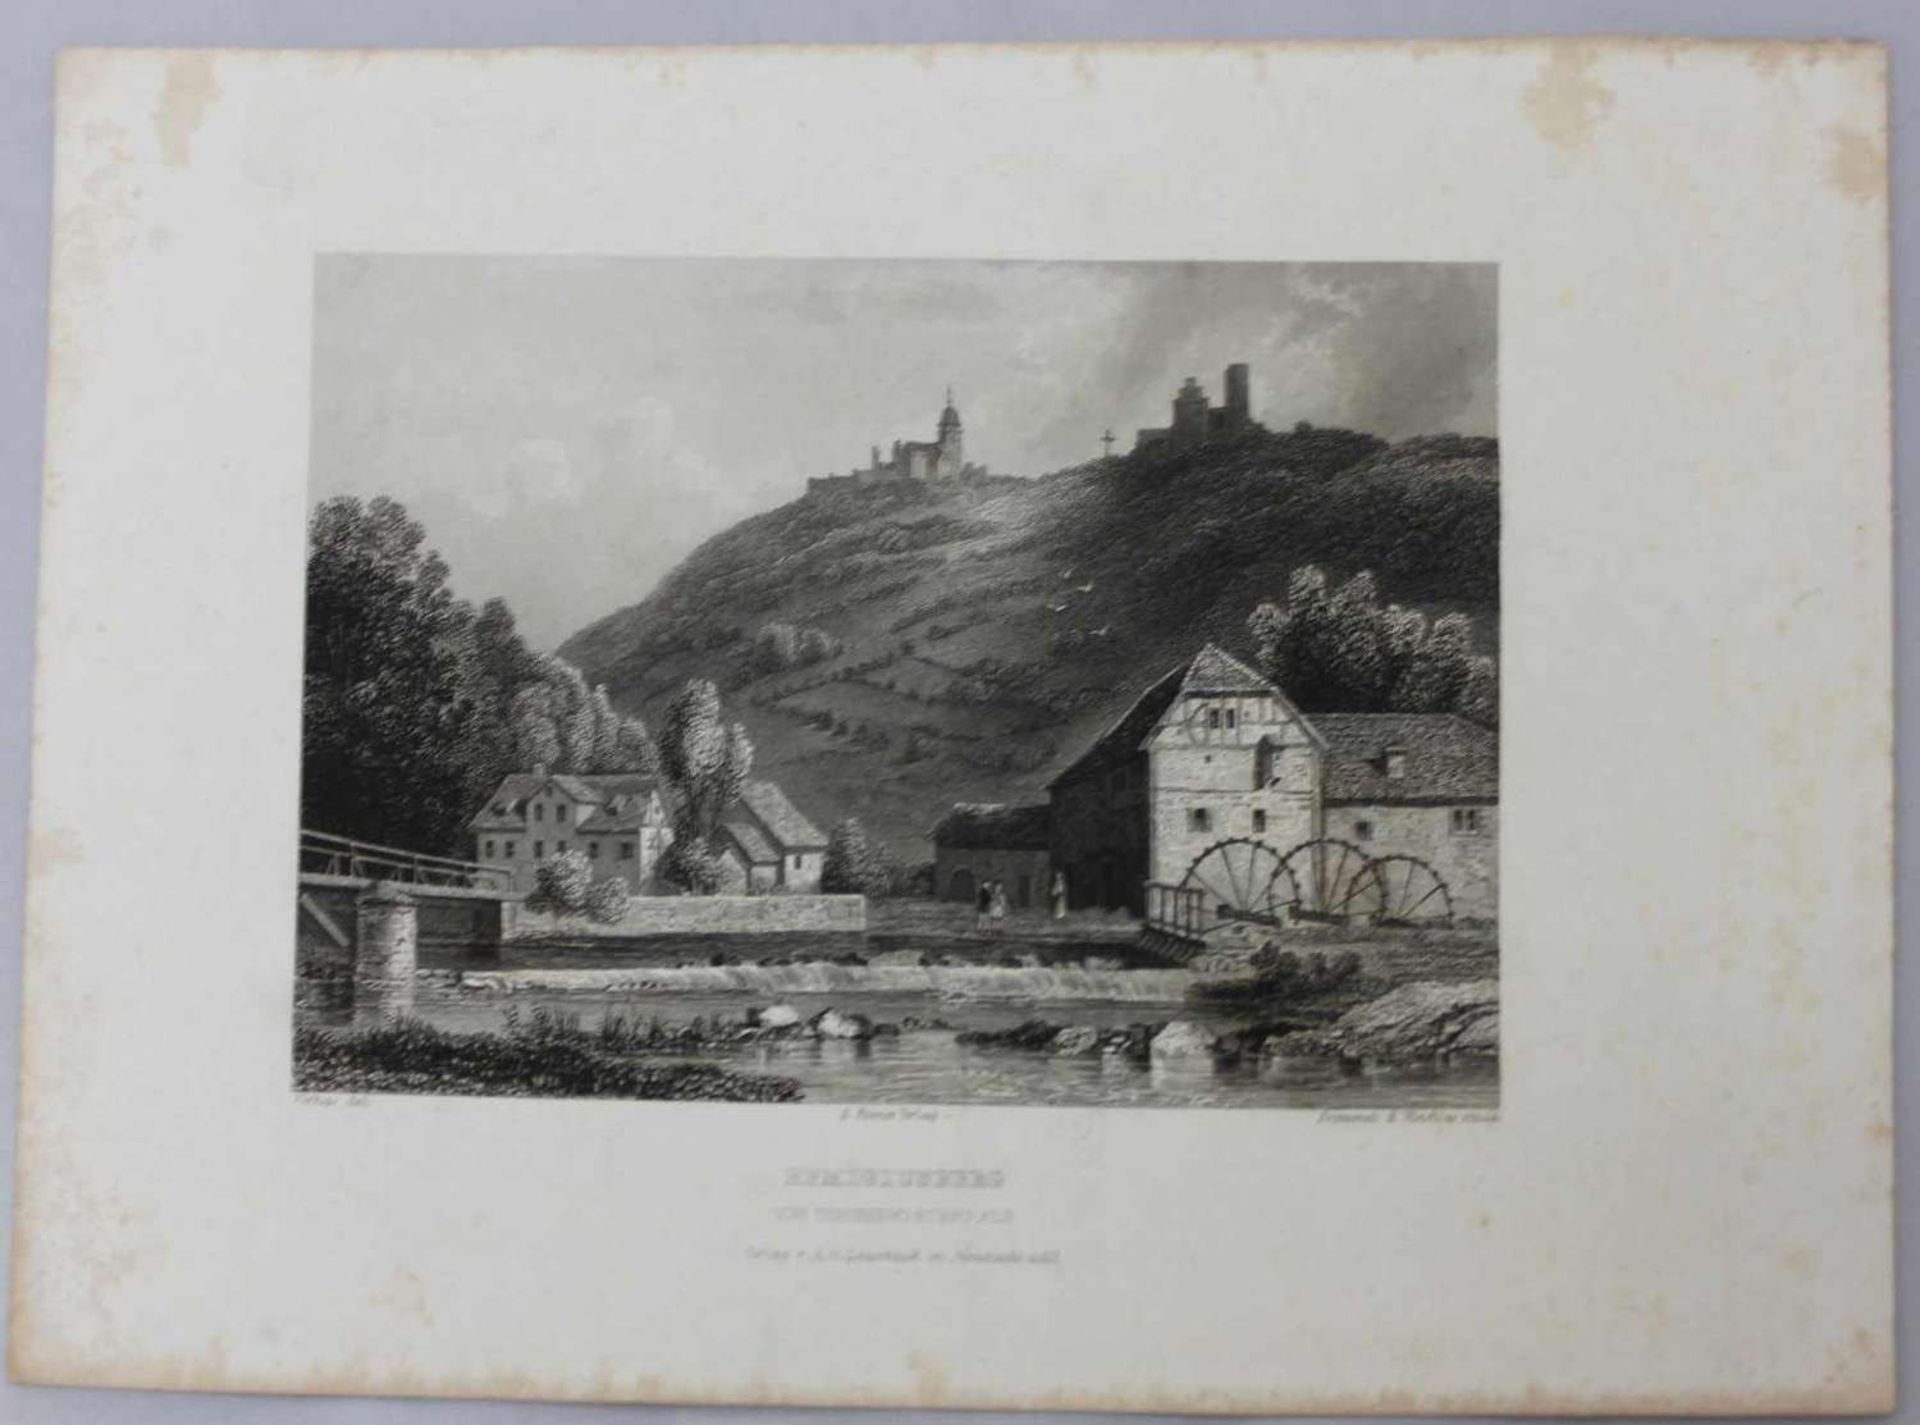 Stahlstich ""Remigiusberg"" von Theisbergstegen aus von Frommel und Winkles um 1840 steel engraving